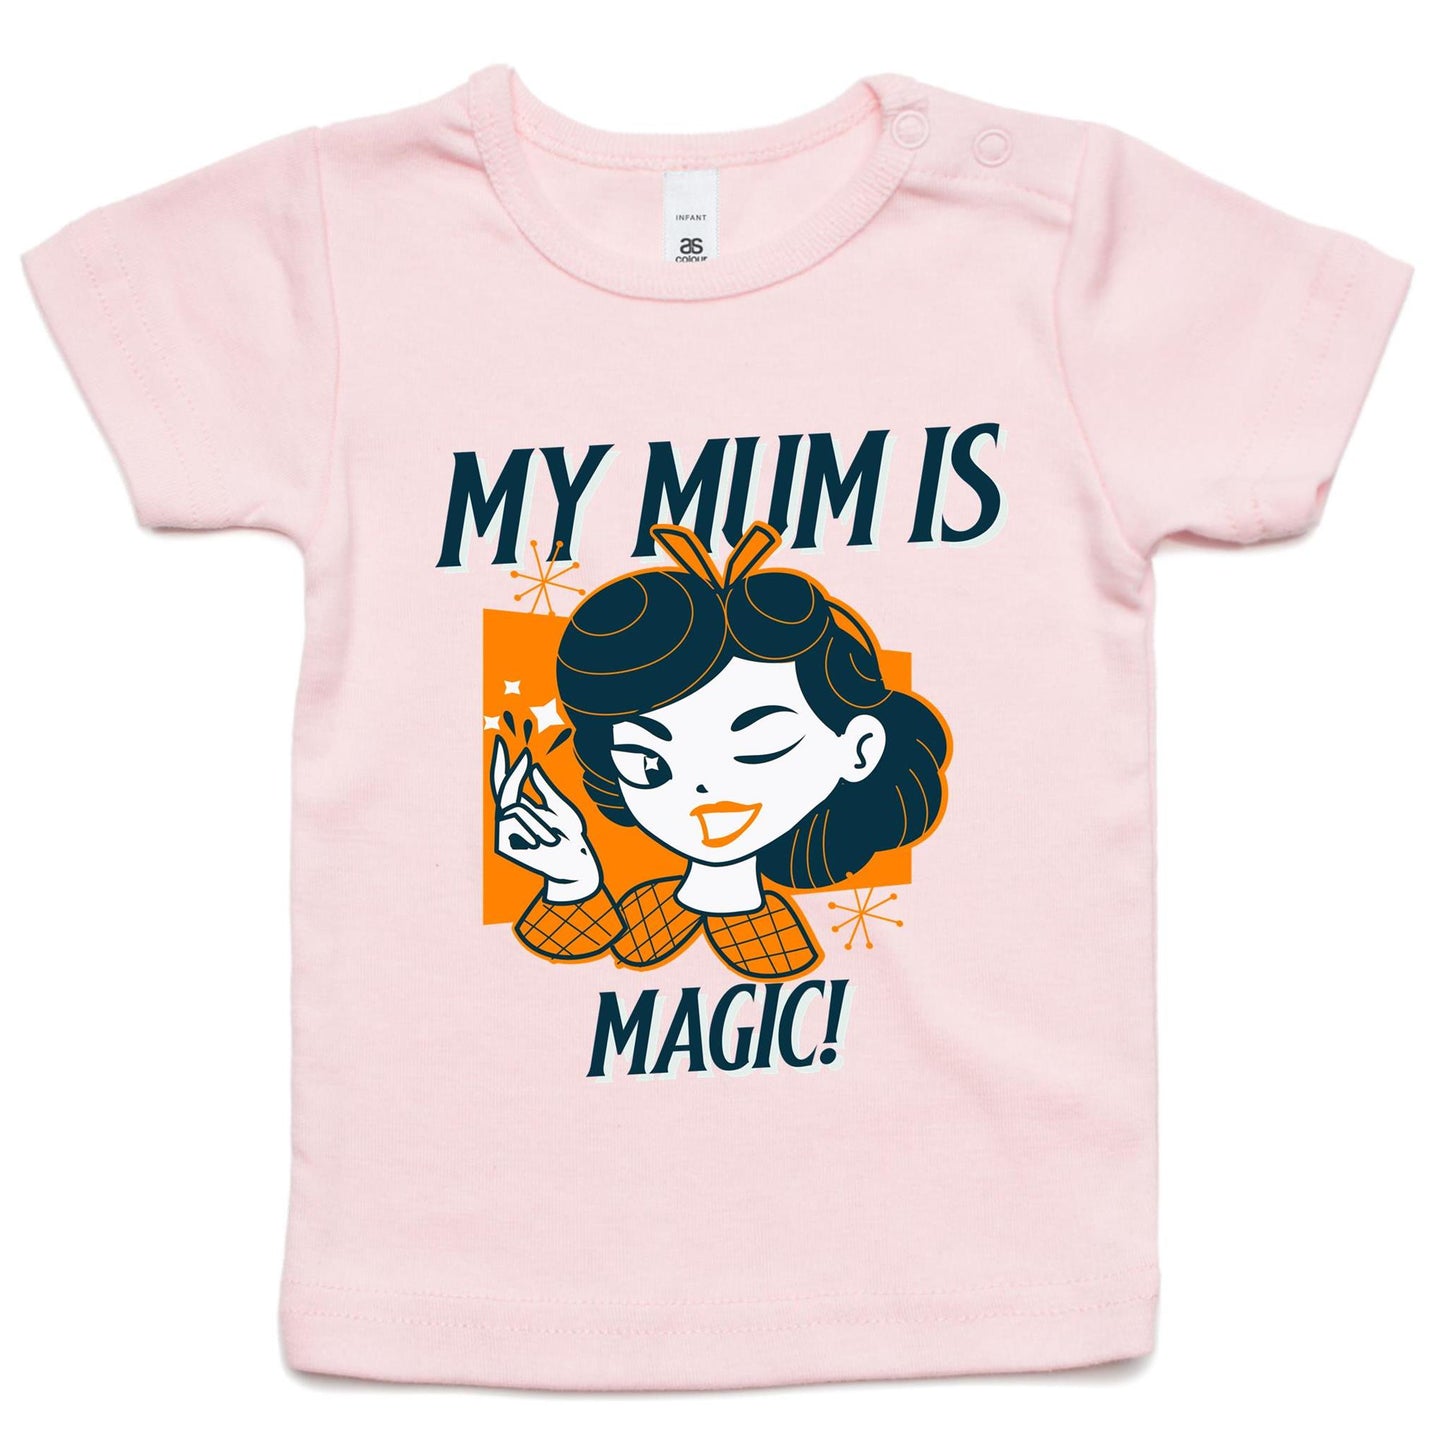 My Mum Is Magic - Baby T-shirt Pink Baby T-shirt Mum Retro